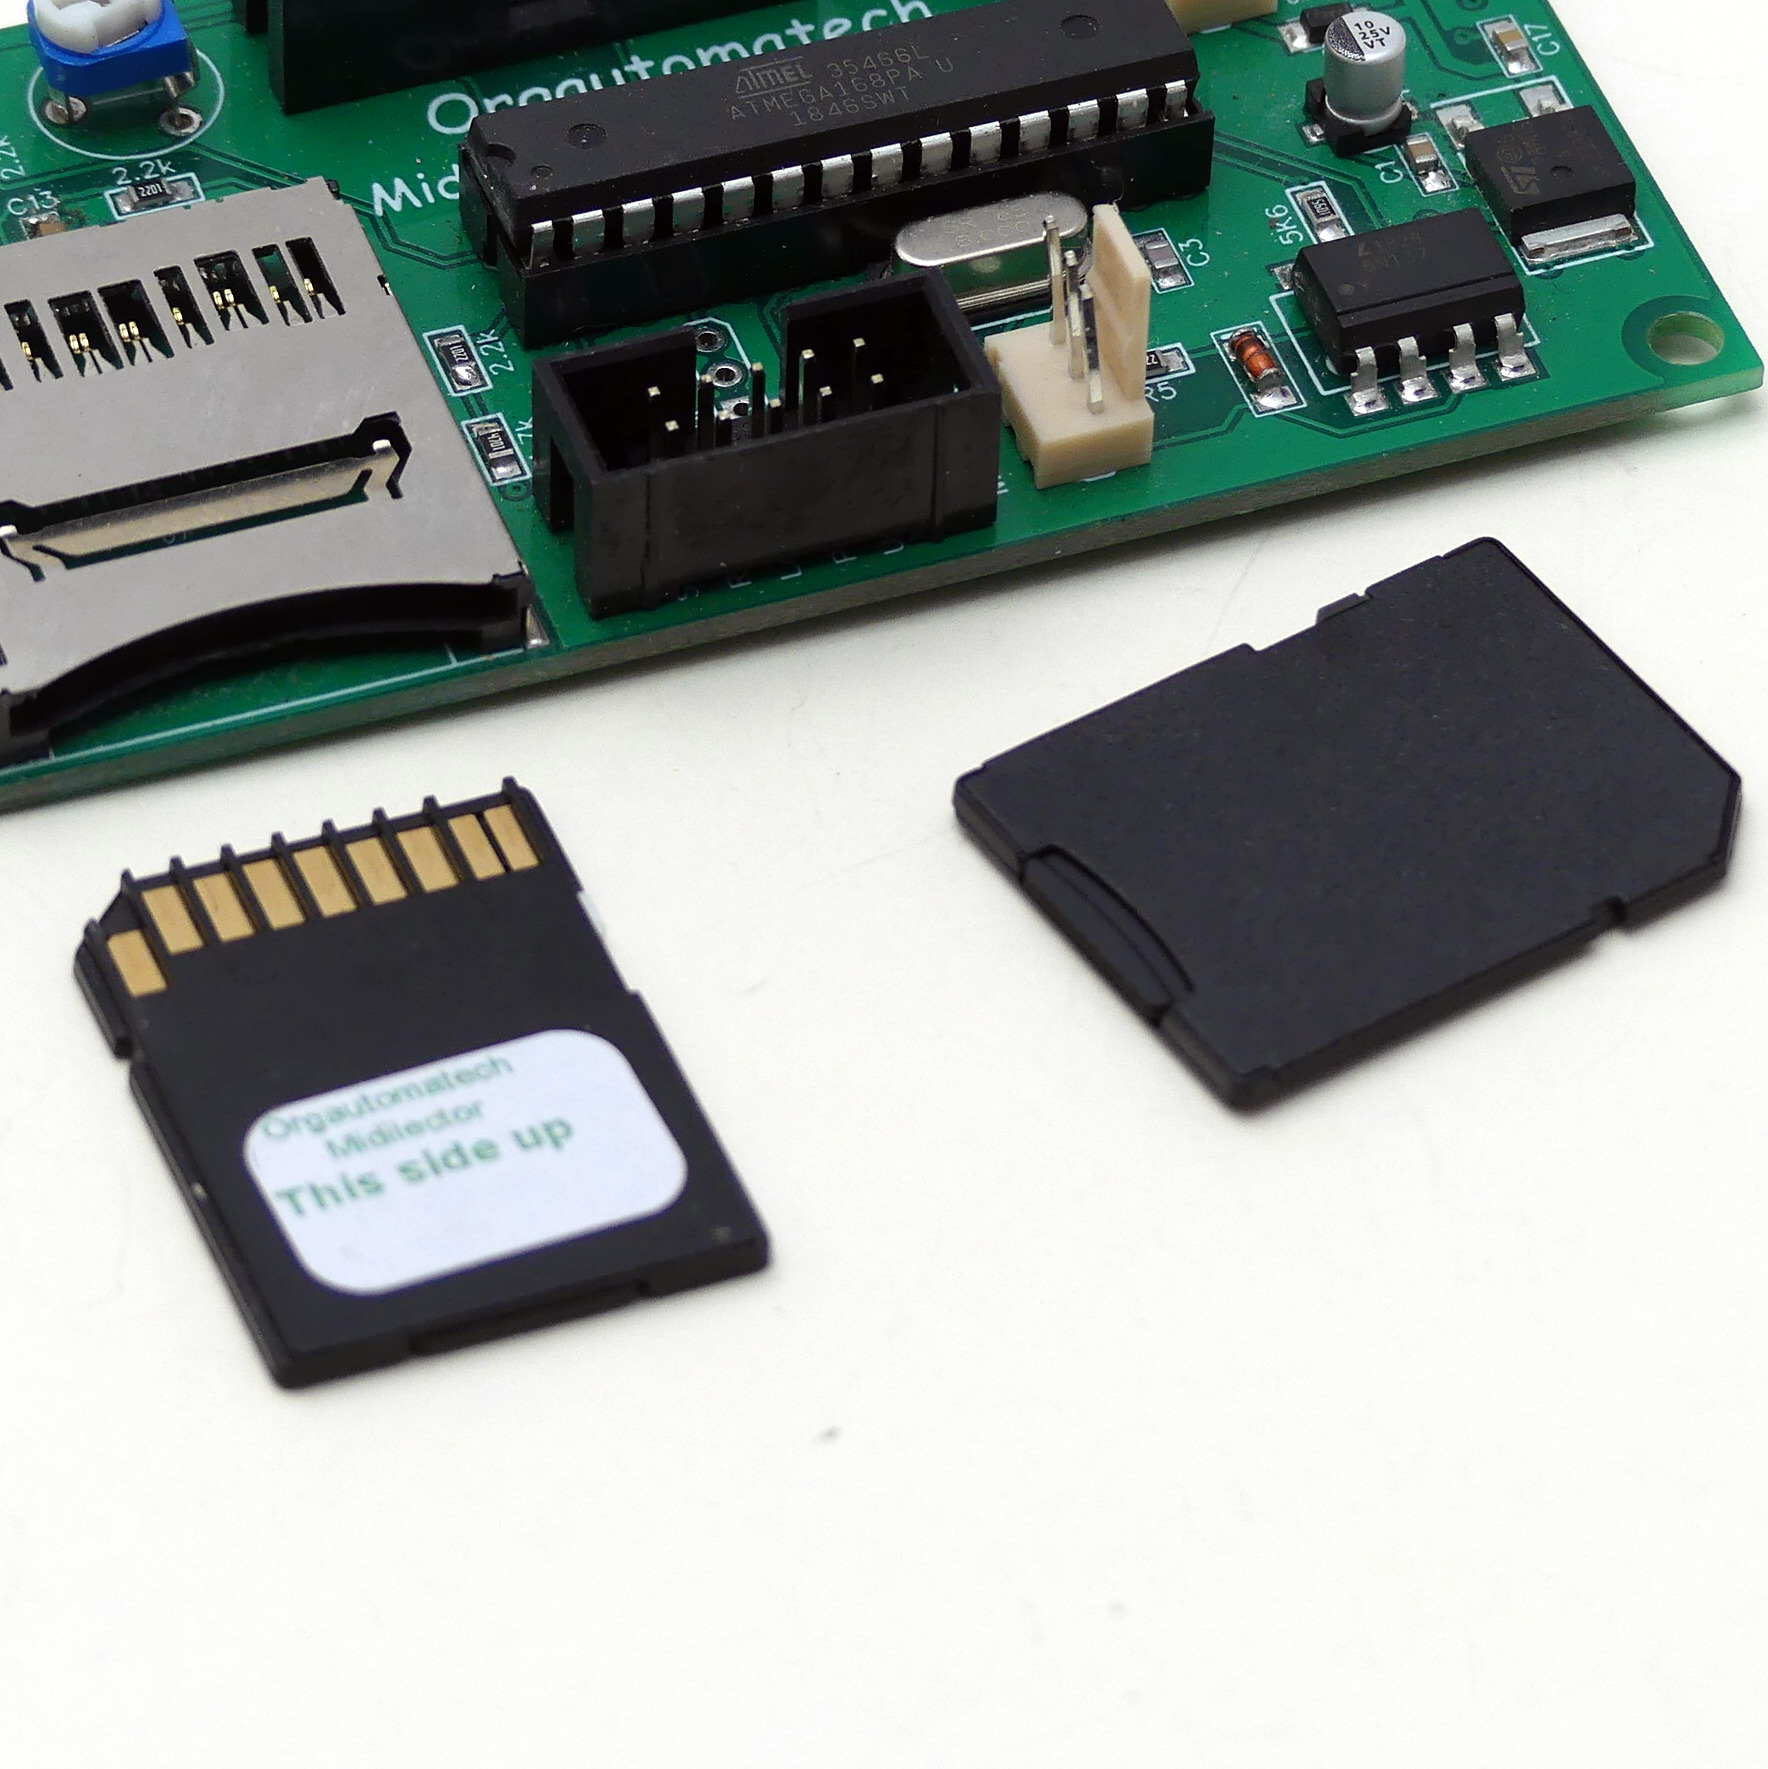 SD card + midilector